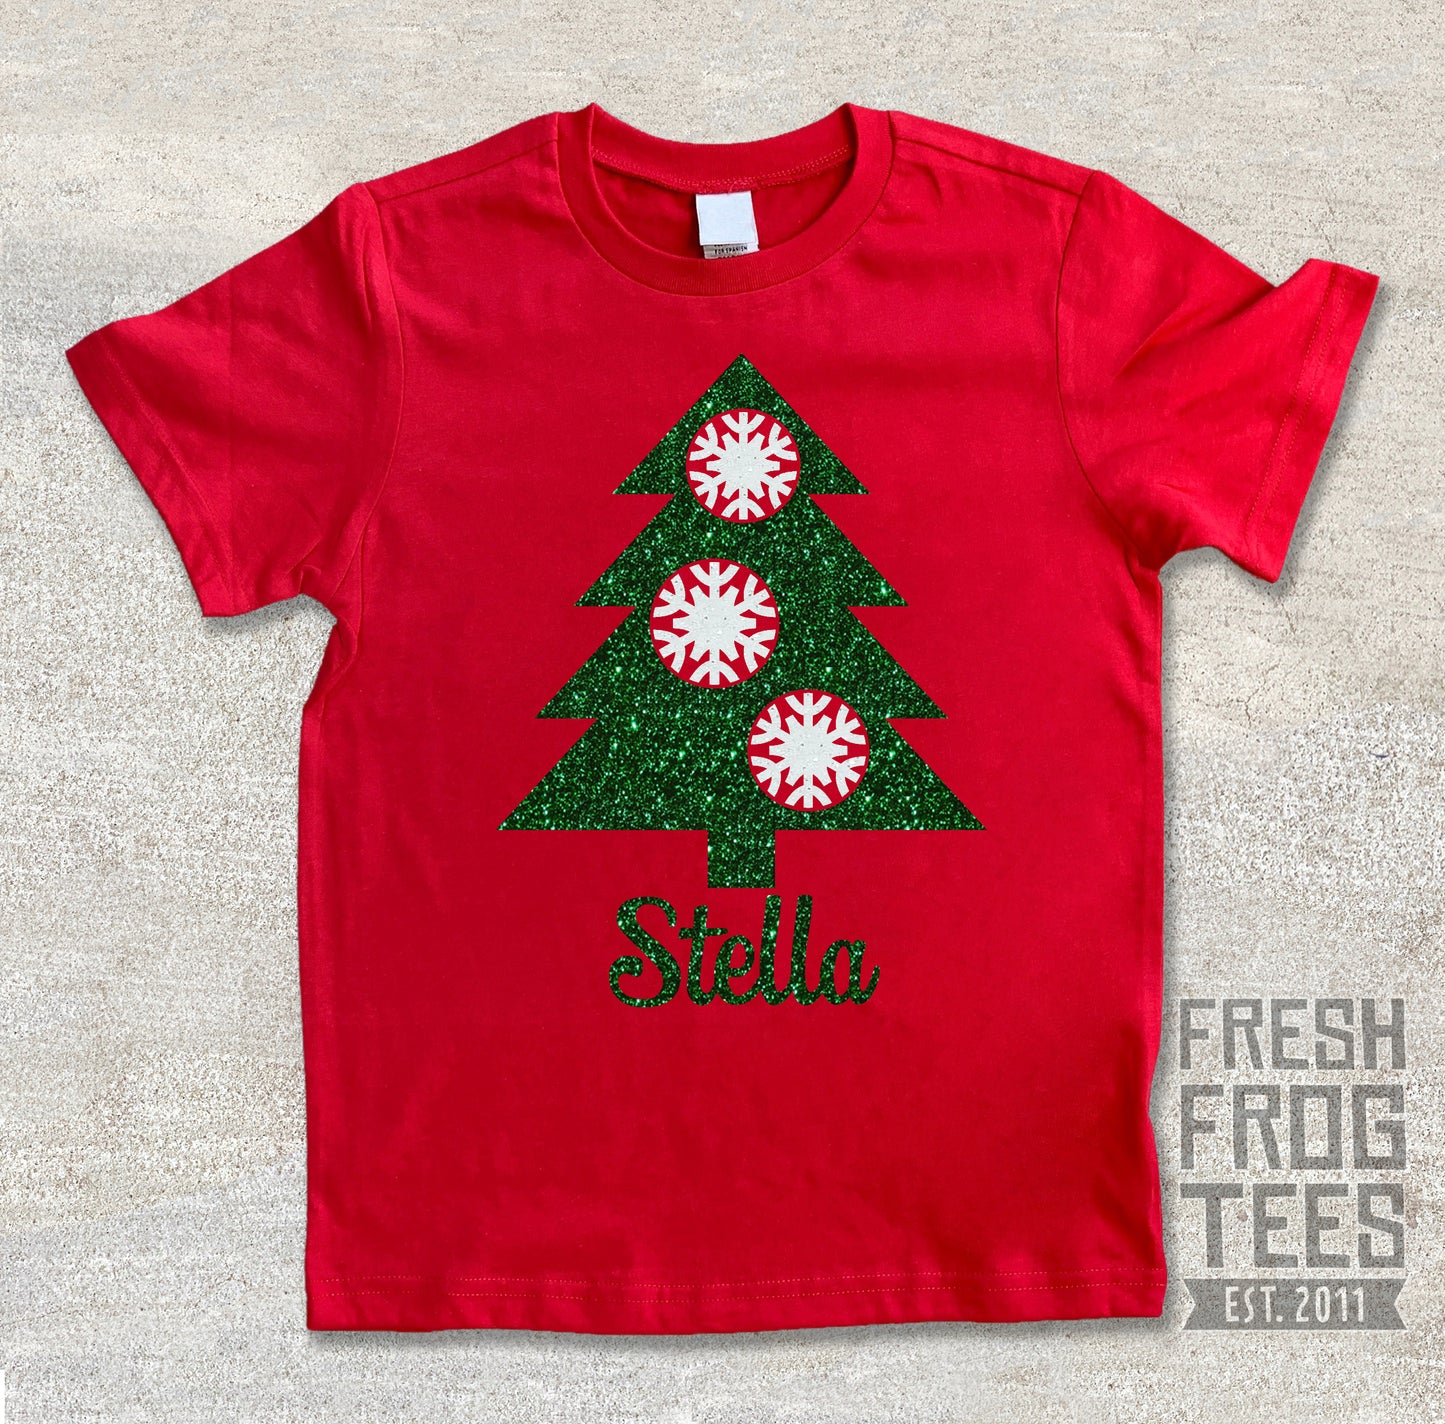 Personalized Christmas Tree Holiday tshirt